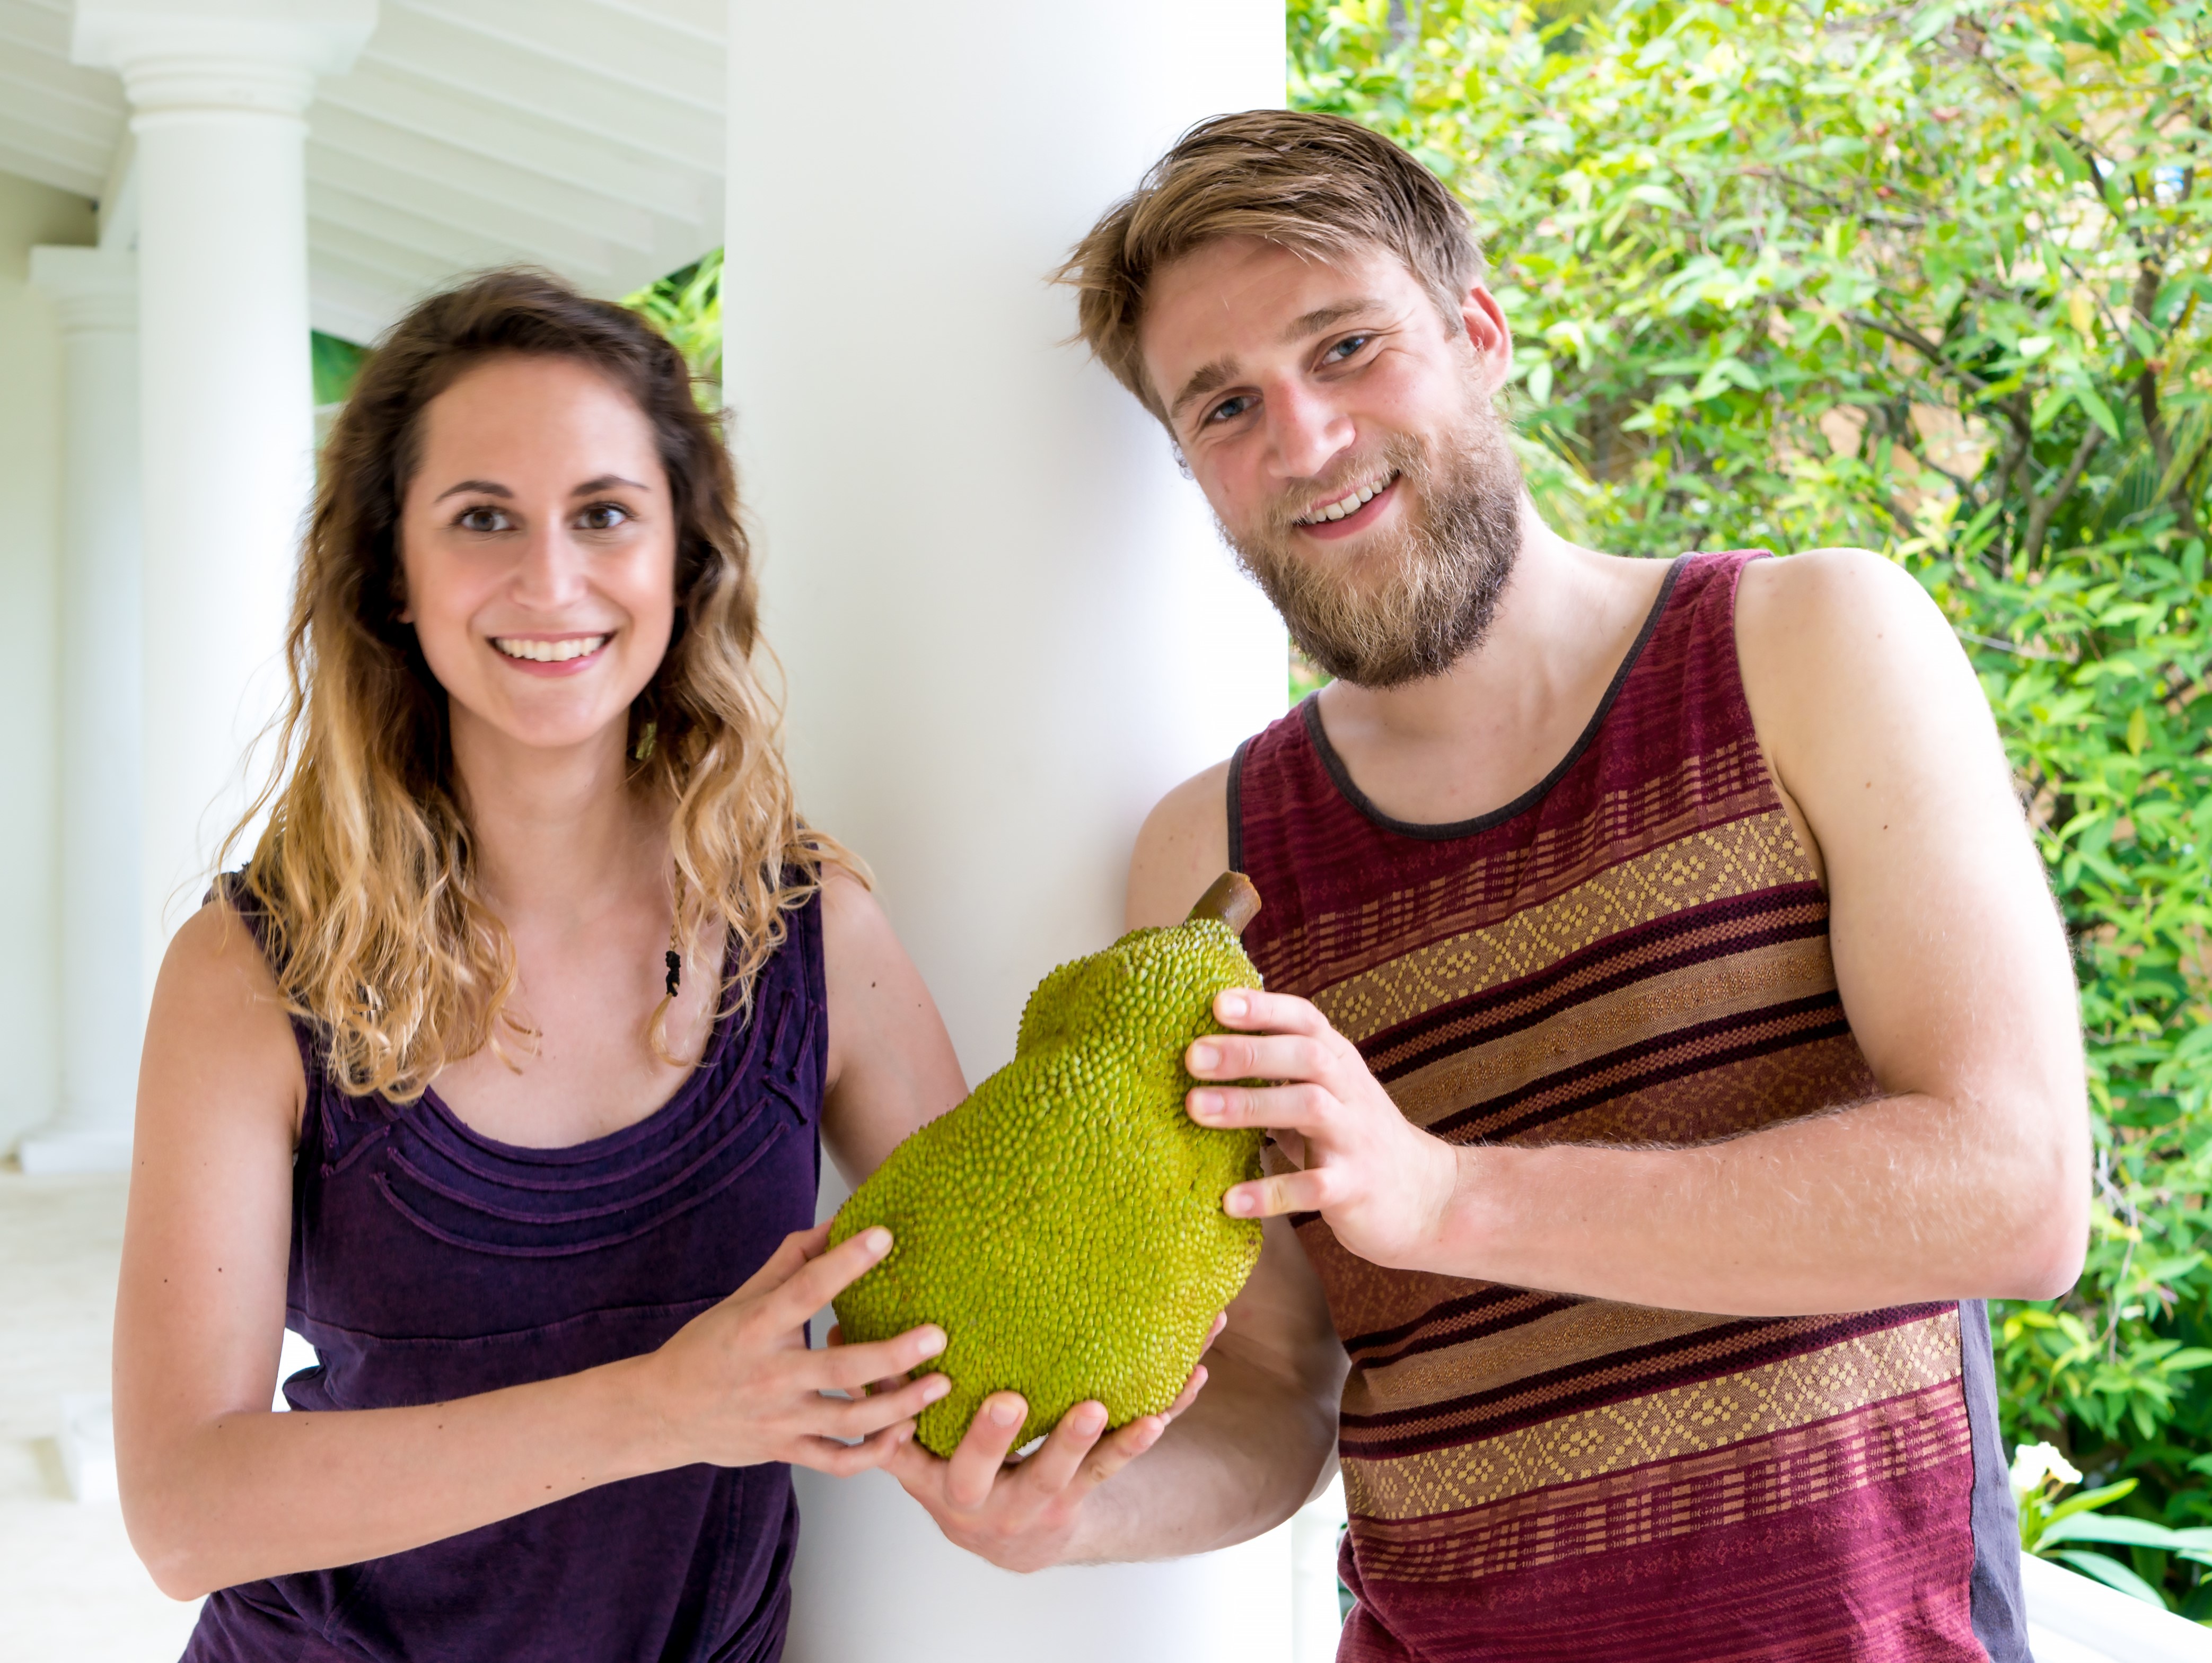 2017 beschlossen wir, Melissa und Julian Baas, mit Who's Jack ein Unternehmen rund um diese einzigartige Frucht aufzubauen.